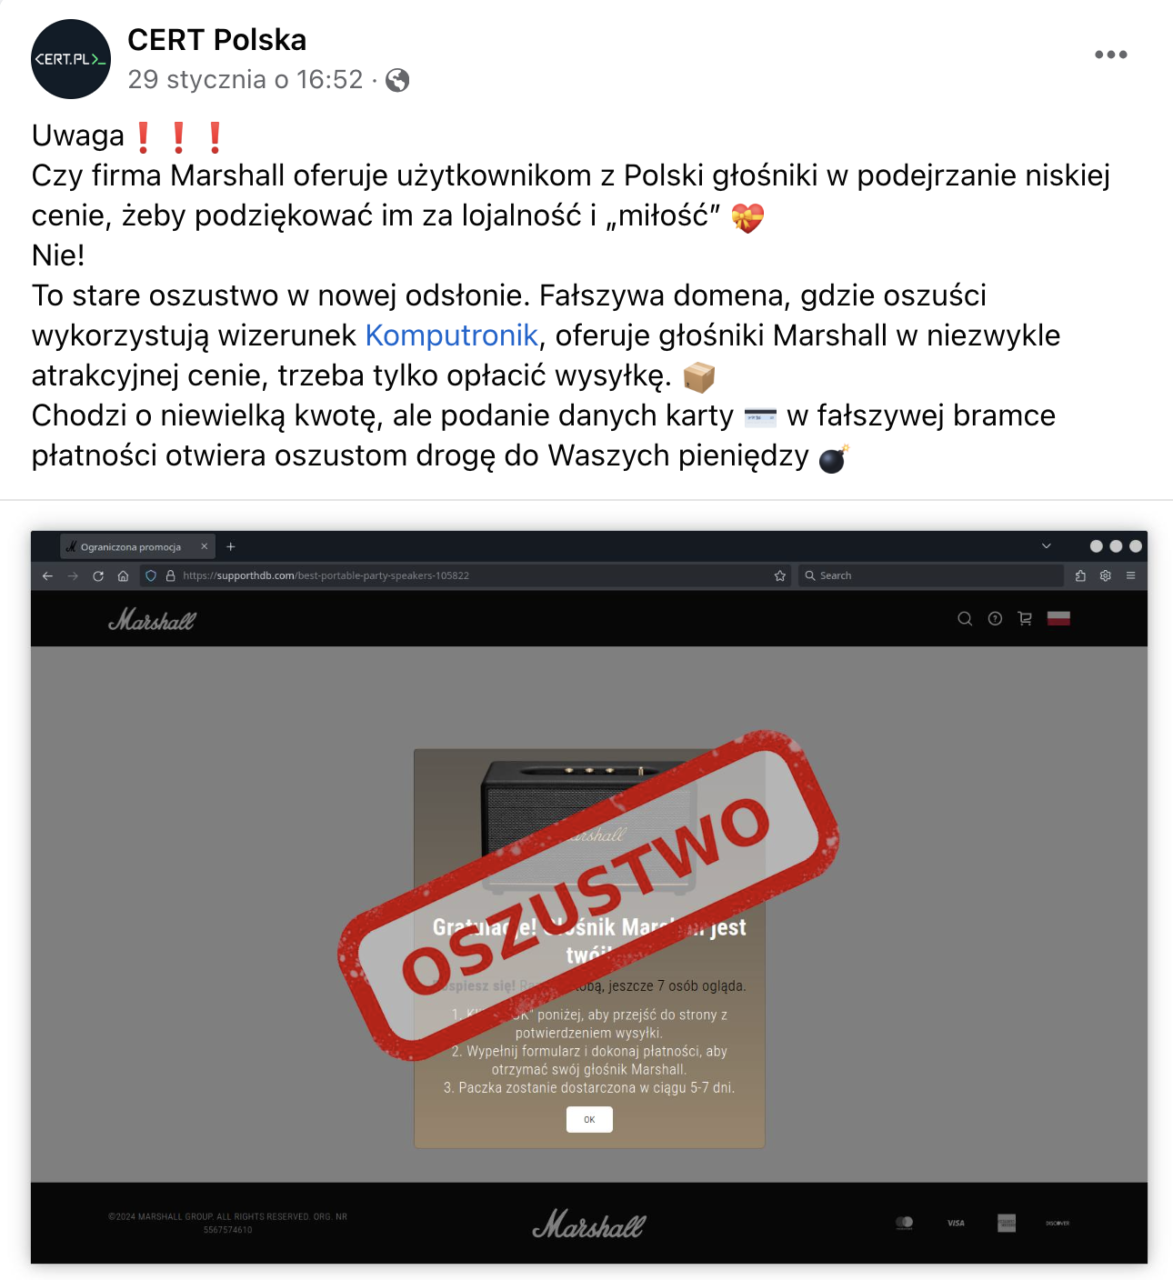 Zrzut ekranu posta na Facebooku od CERT Polska ostrzegającego przed oszustwem związanym z ofertą głośników Marshall, z nałożonym dużym czerwonym stemplem "OSZUSTWO" na zrzut ekranu fałszywej strony promocyjnej.